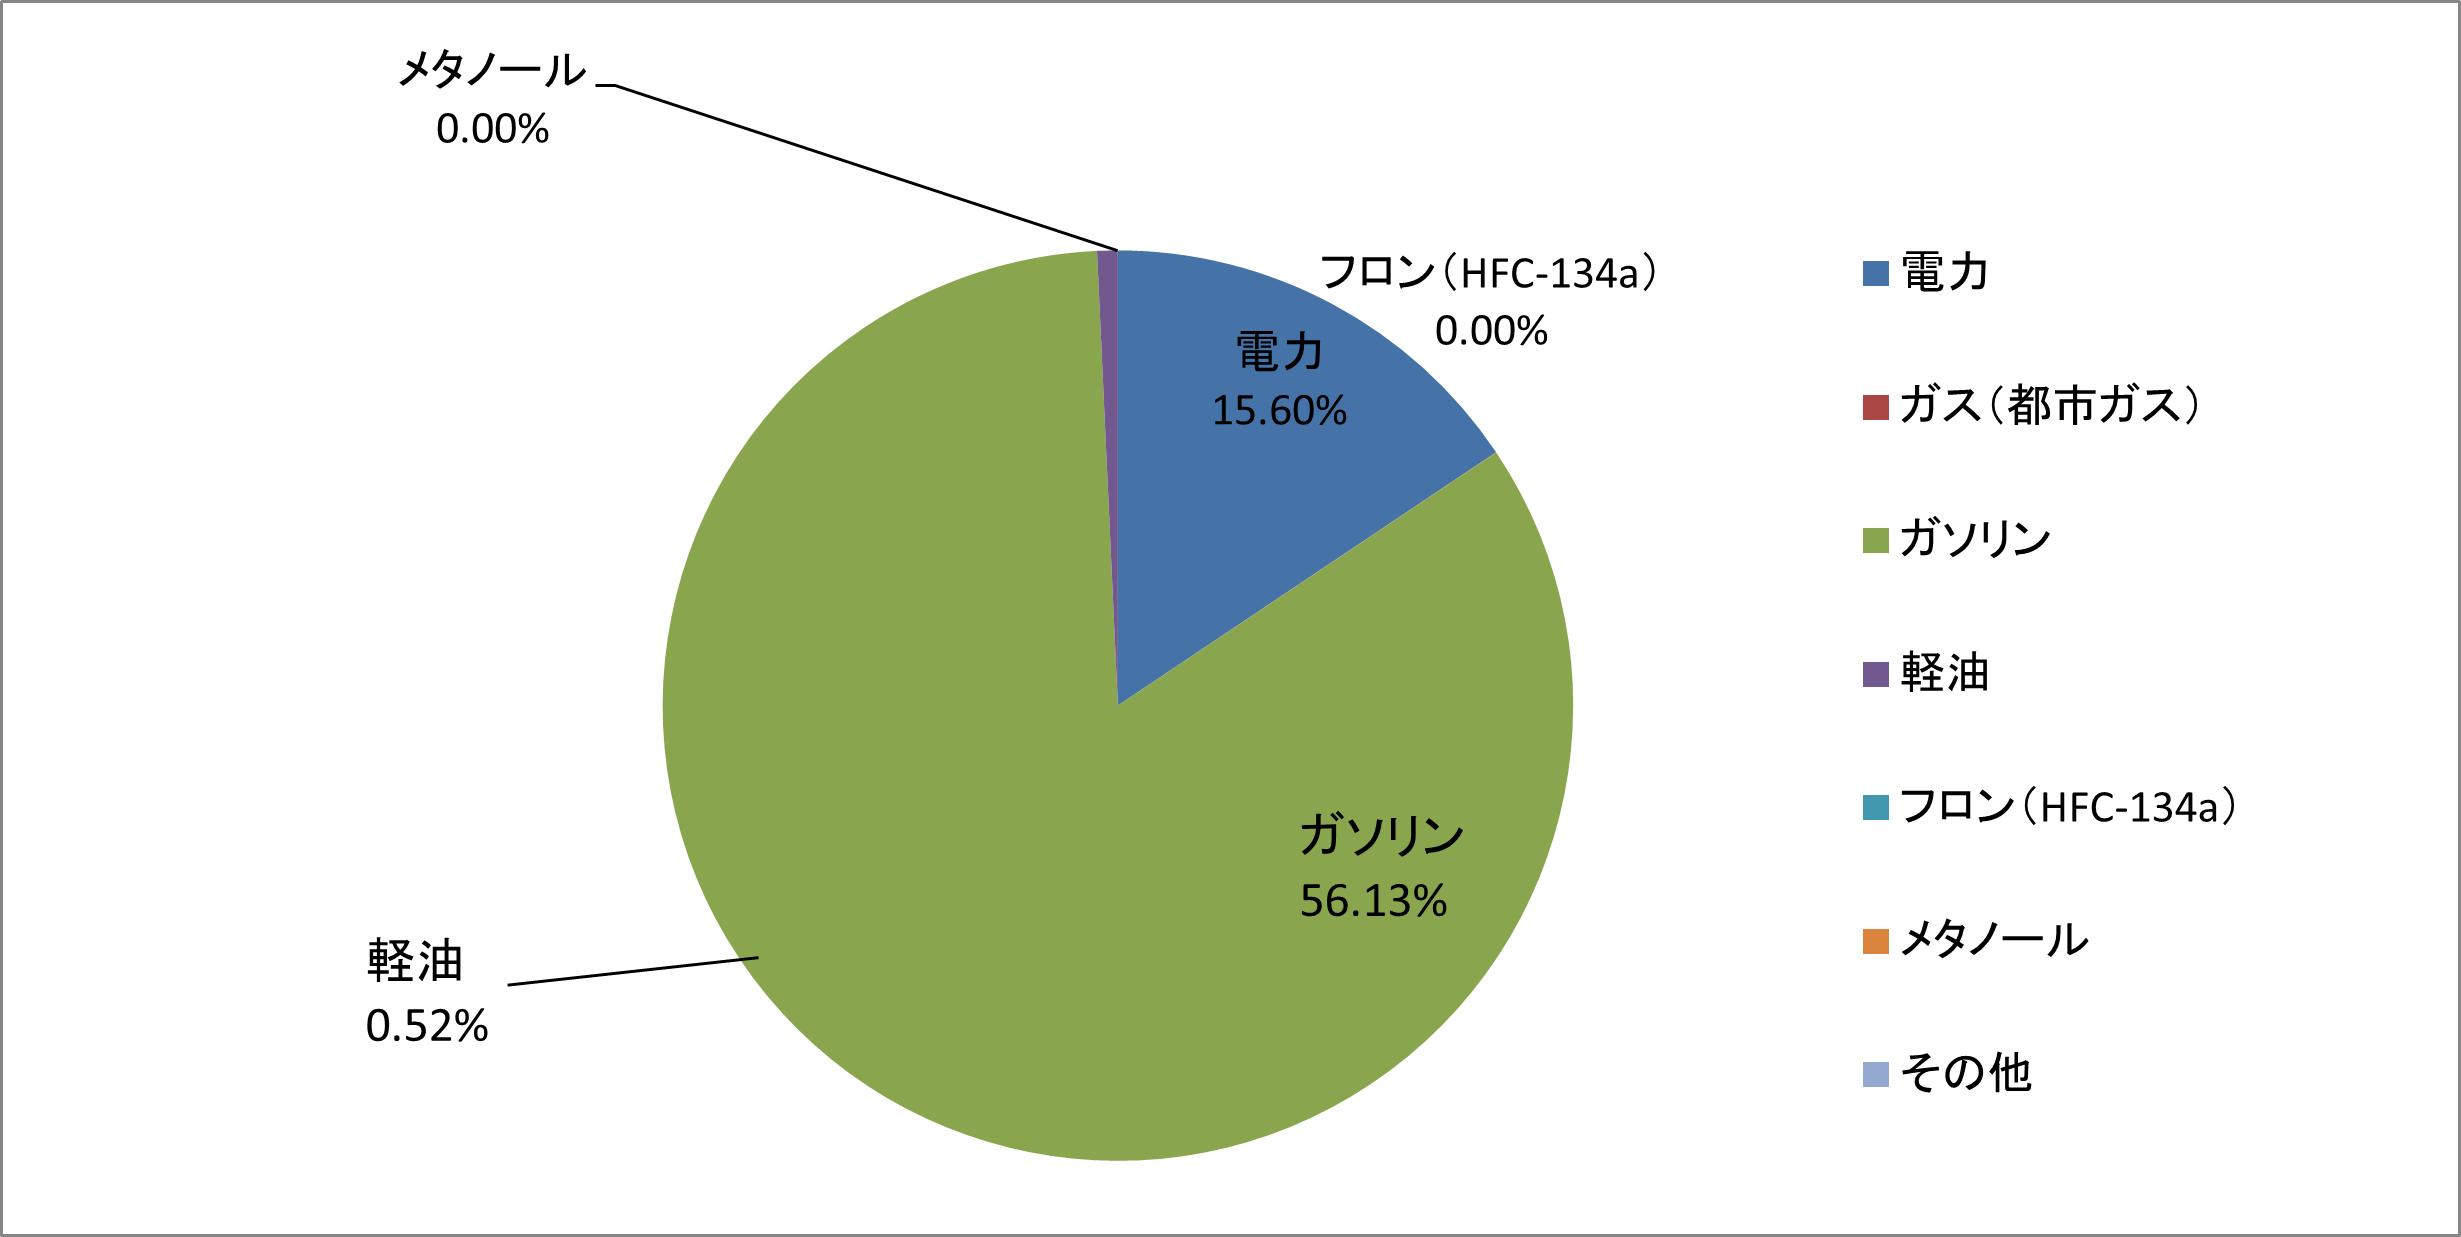 2022年の新日本コーポレーションの温室効果ガス排出量の結果を示した円グラフ ガソリンが56.13％、電力が15.60％、軽油が0.52％